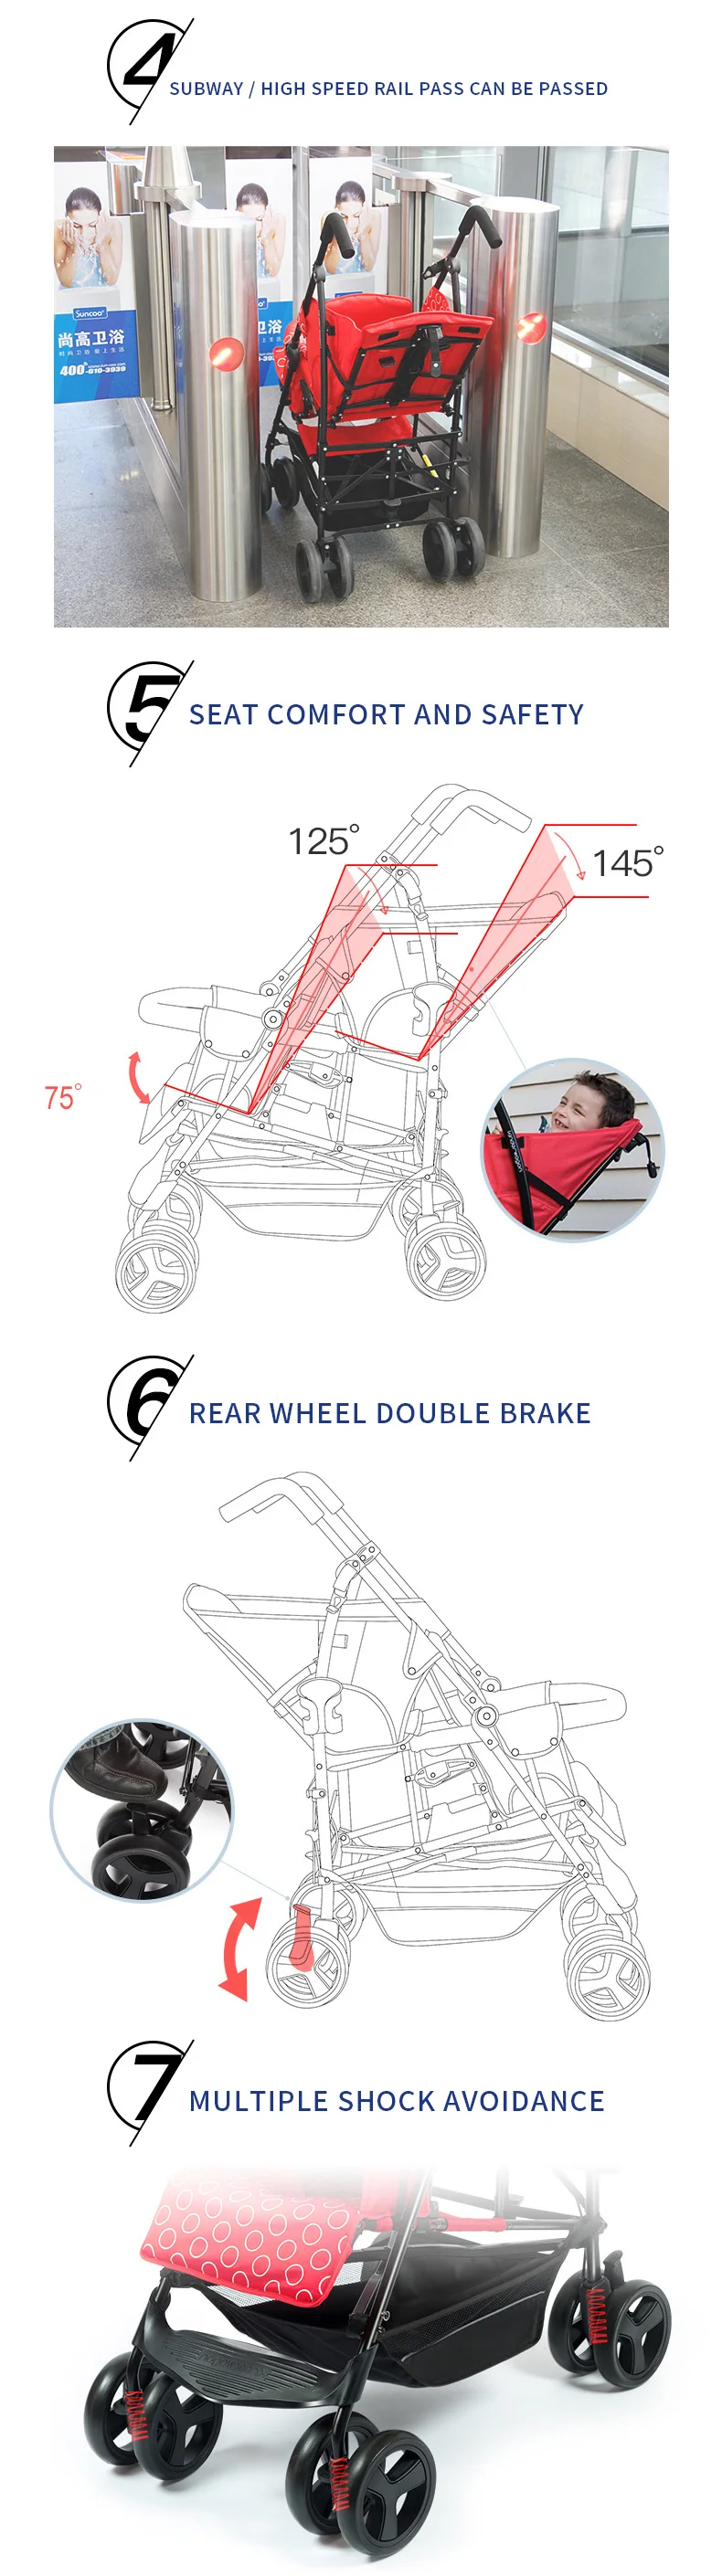 Двойная многофункциональная коляска, двойная большая детская коляска, kinderwagon, легкая складная коляска, может сидеть и лежать с автокреслом